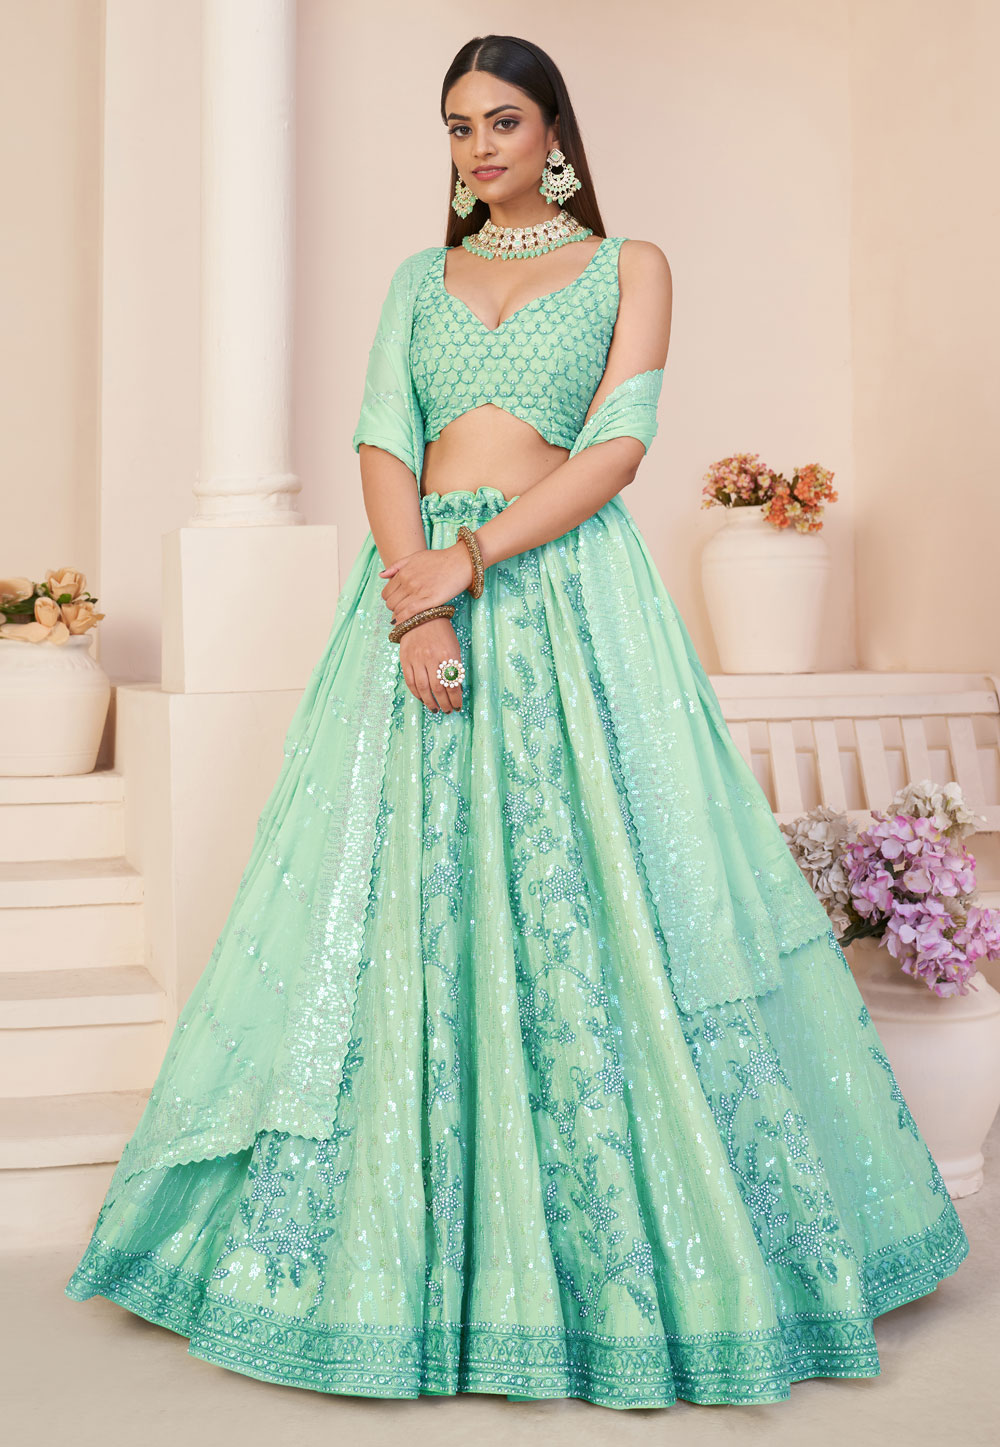 Buy MAHASIDDH FASHION Indian trendy Net Bridal Wedding Reception Lehenga  Chaniya Choli at Amazon.in